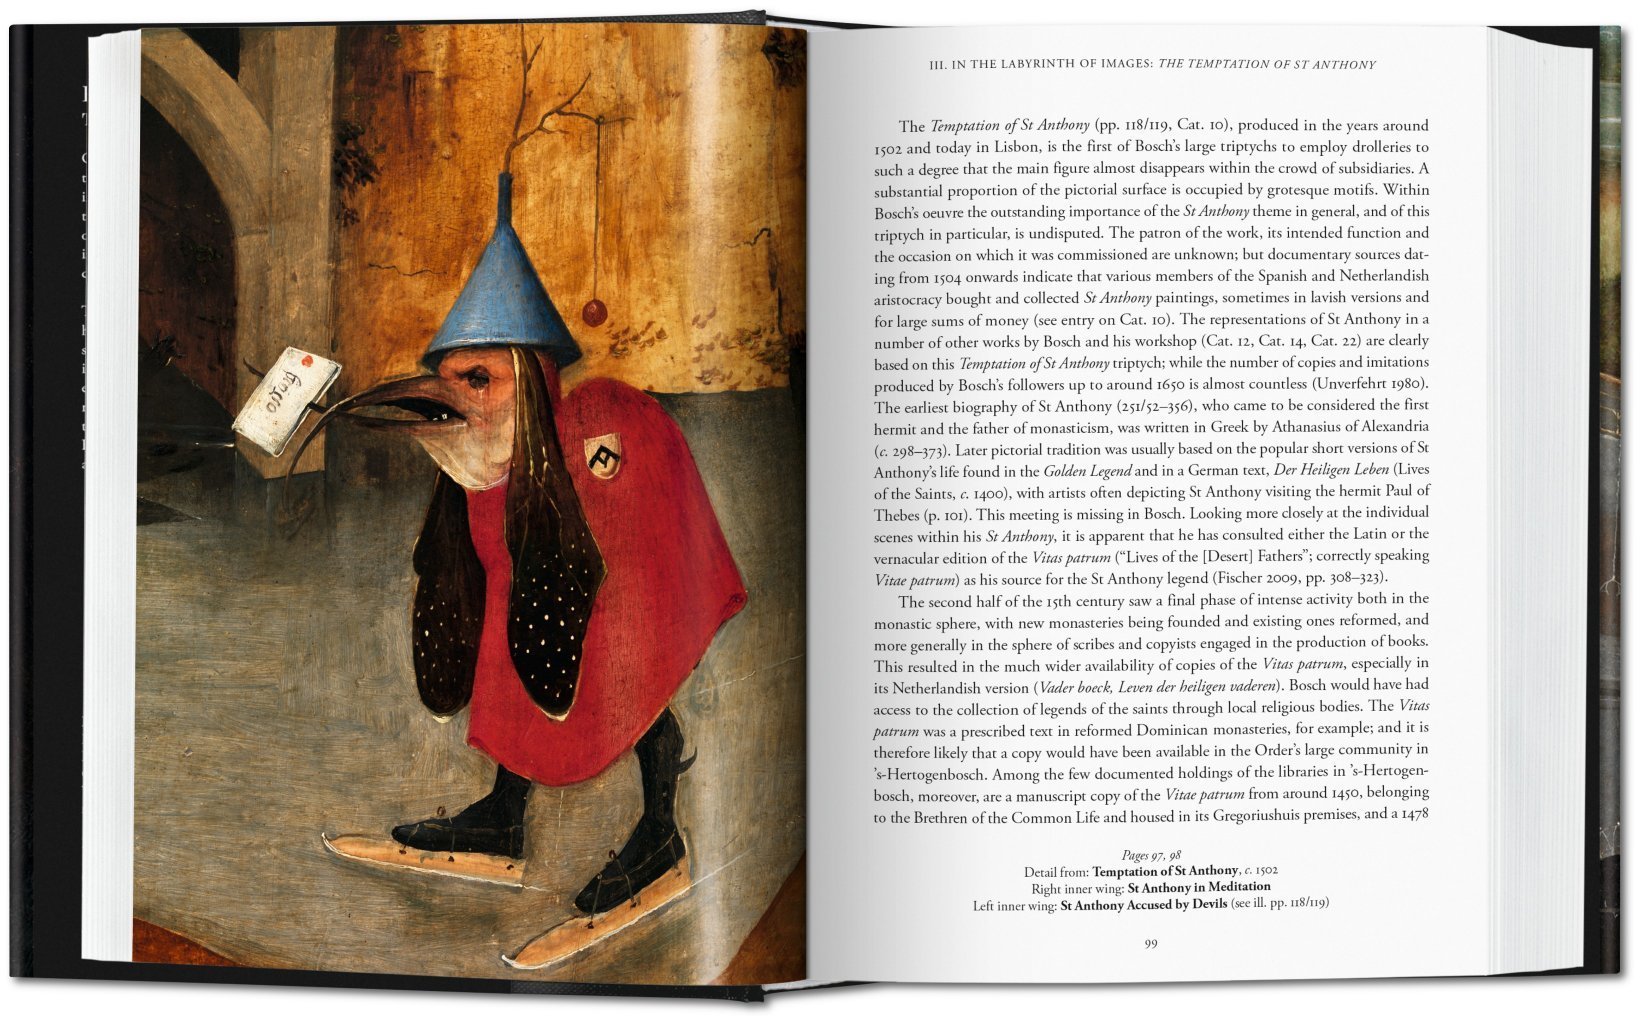 Hieronymus Bosch. Das vollständige Werk | Bibliotheca Universalis